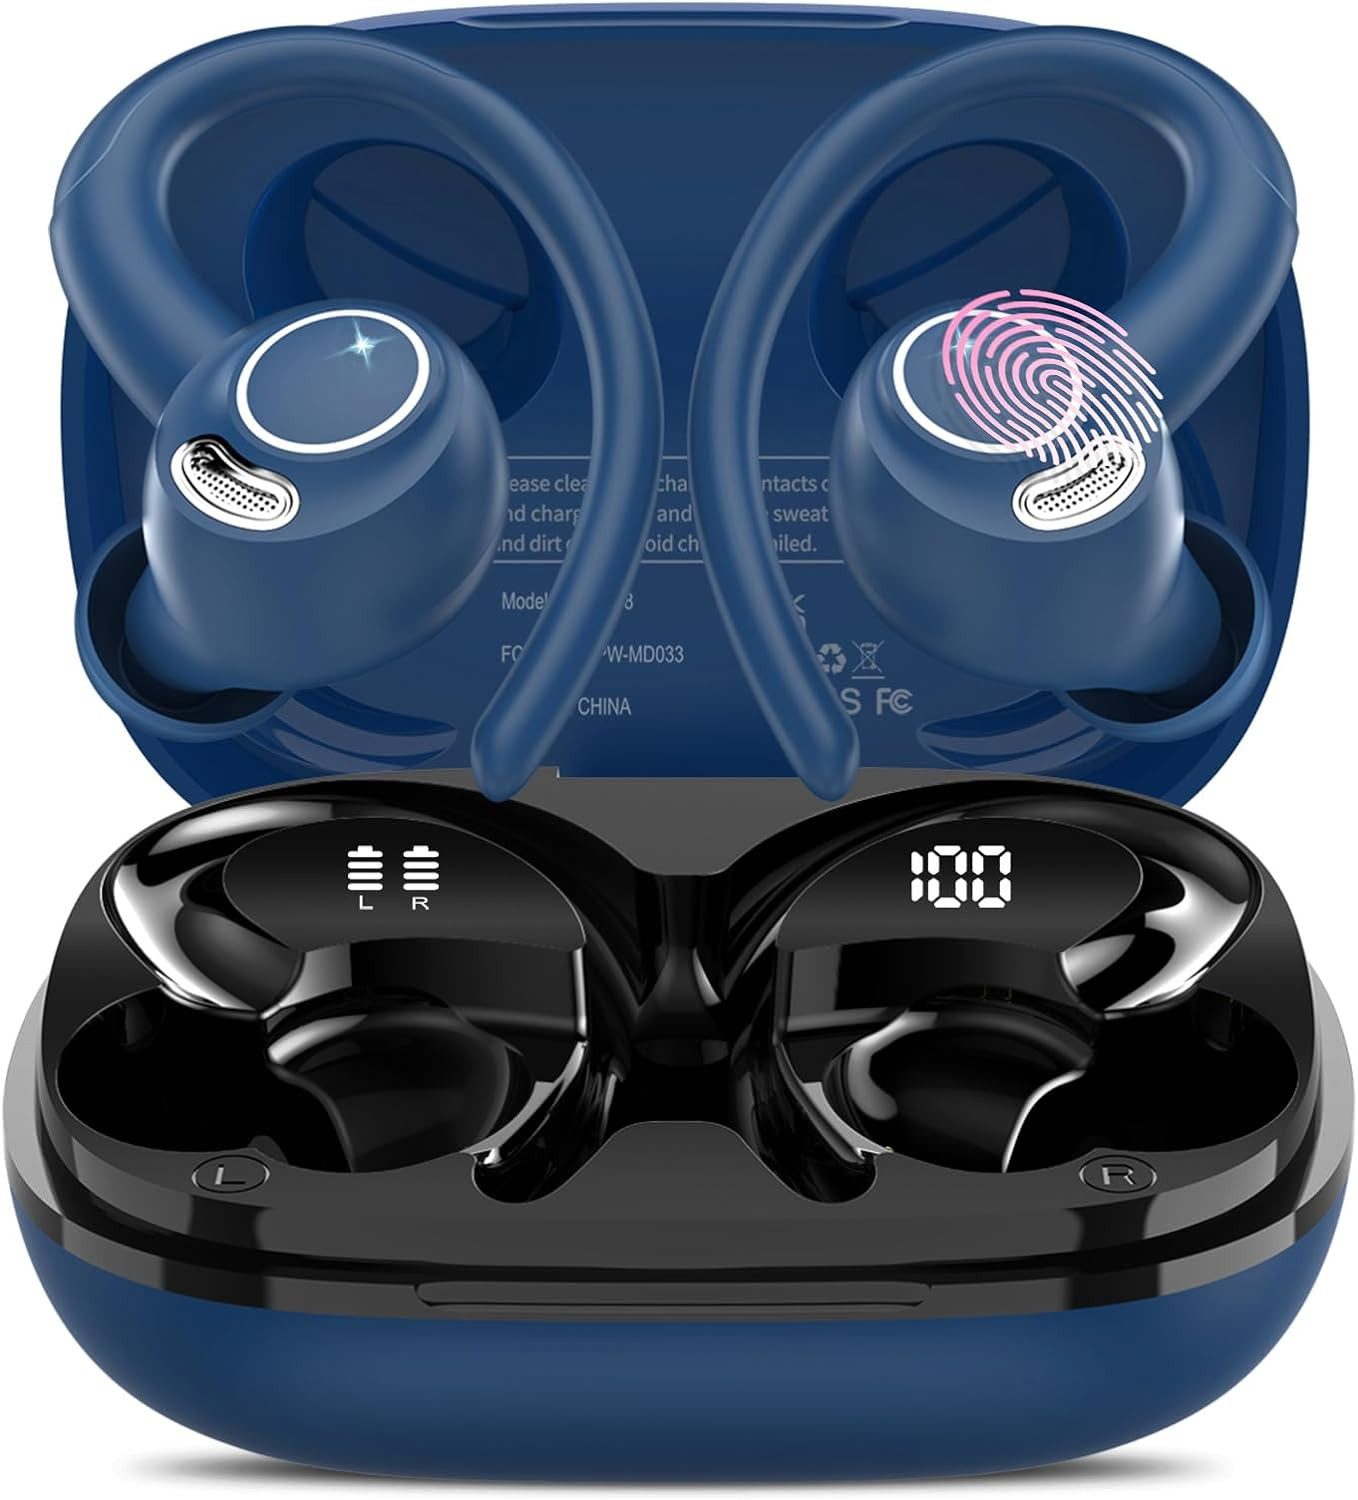 Jesebang 8 Stunden Akkulaufzeit pro Ladung bieten In-Ear-Kopfhörer (mit 13-mm-Dynamiktreiber und Touch-Oberfläche für mühelose Musiksteuerung, für Stabilität und Komfort bei Laufen oder Sportaktivitäten, Exzellenter Klanggenuss und Benutzerfreundlichkeit,mit IP7 Wasserdicht)